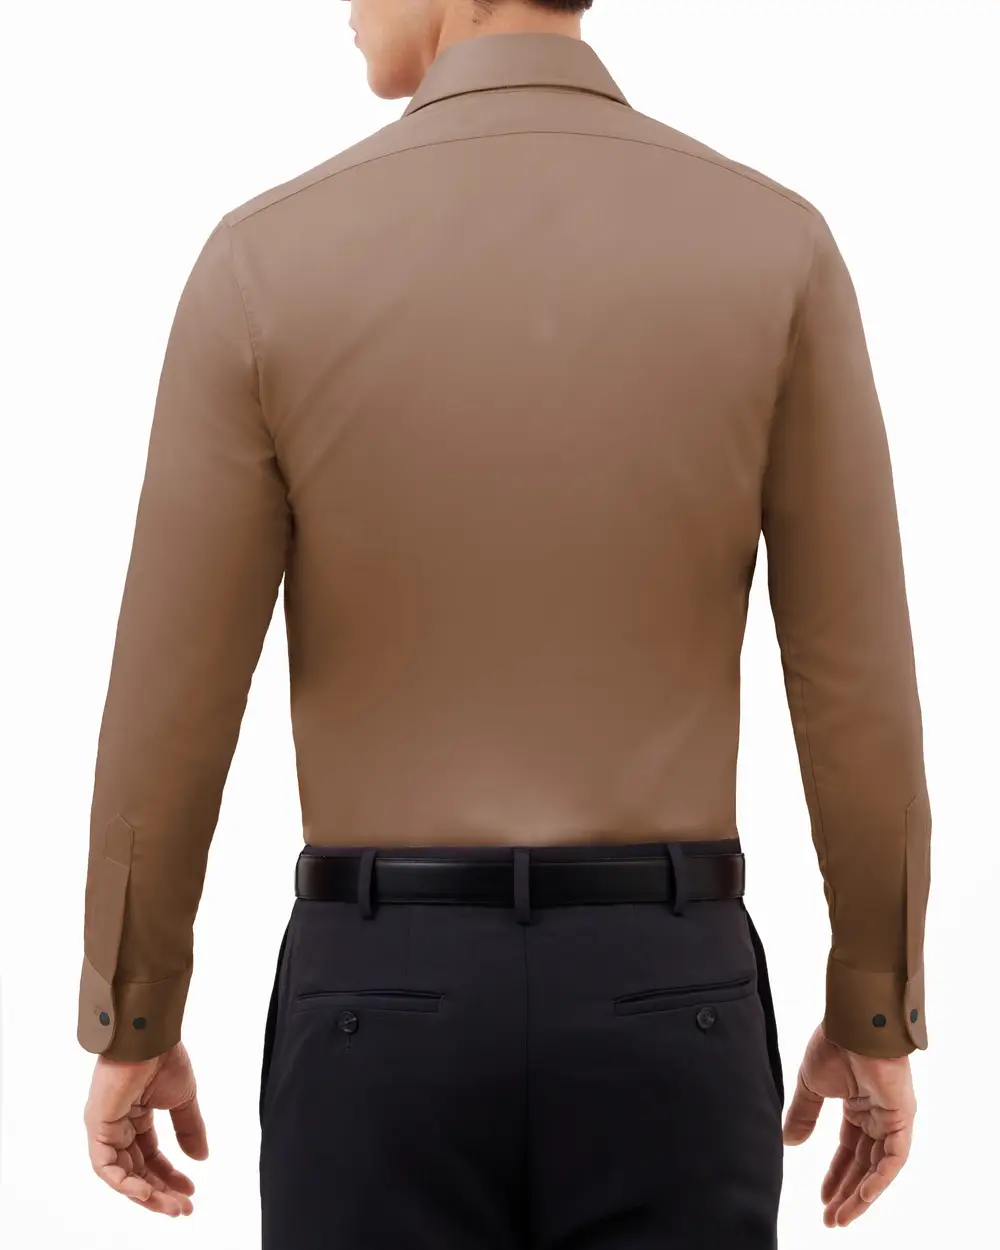 Camisa lisa de vestir slim fit manga larga   pique color cafe
